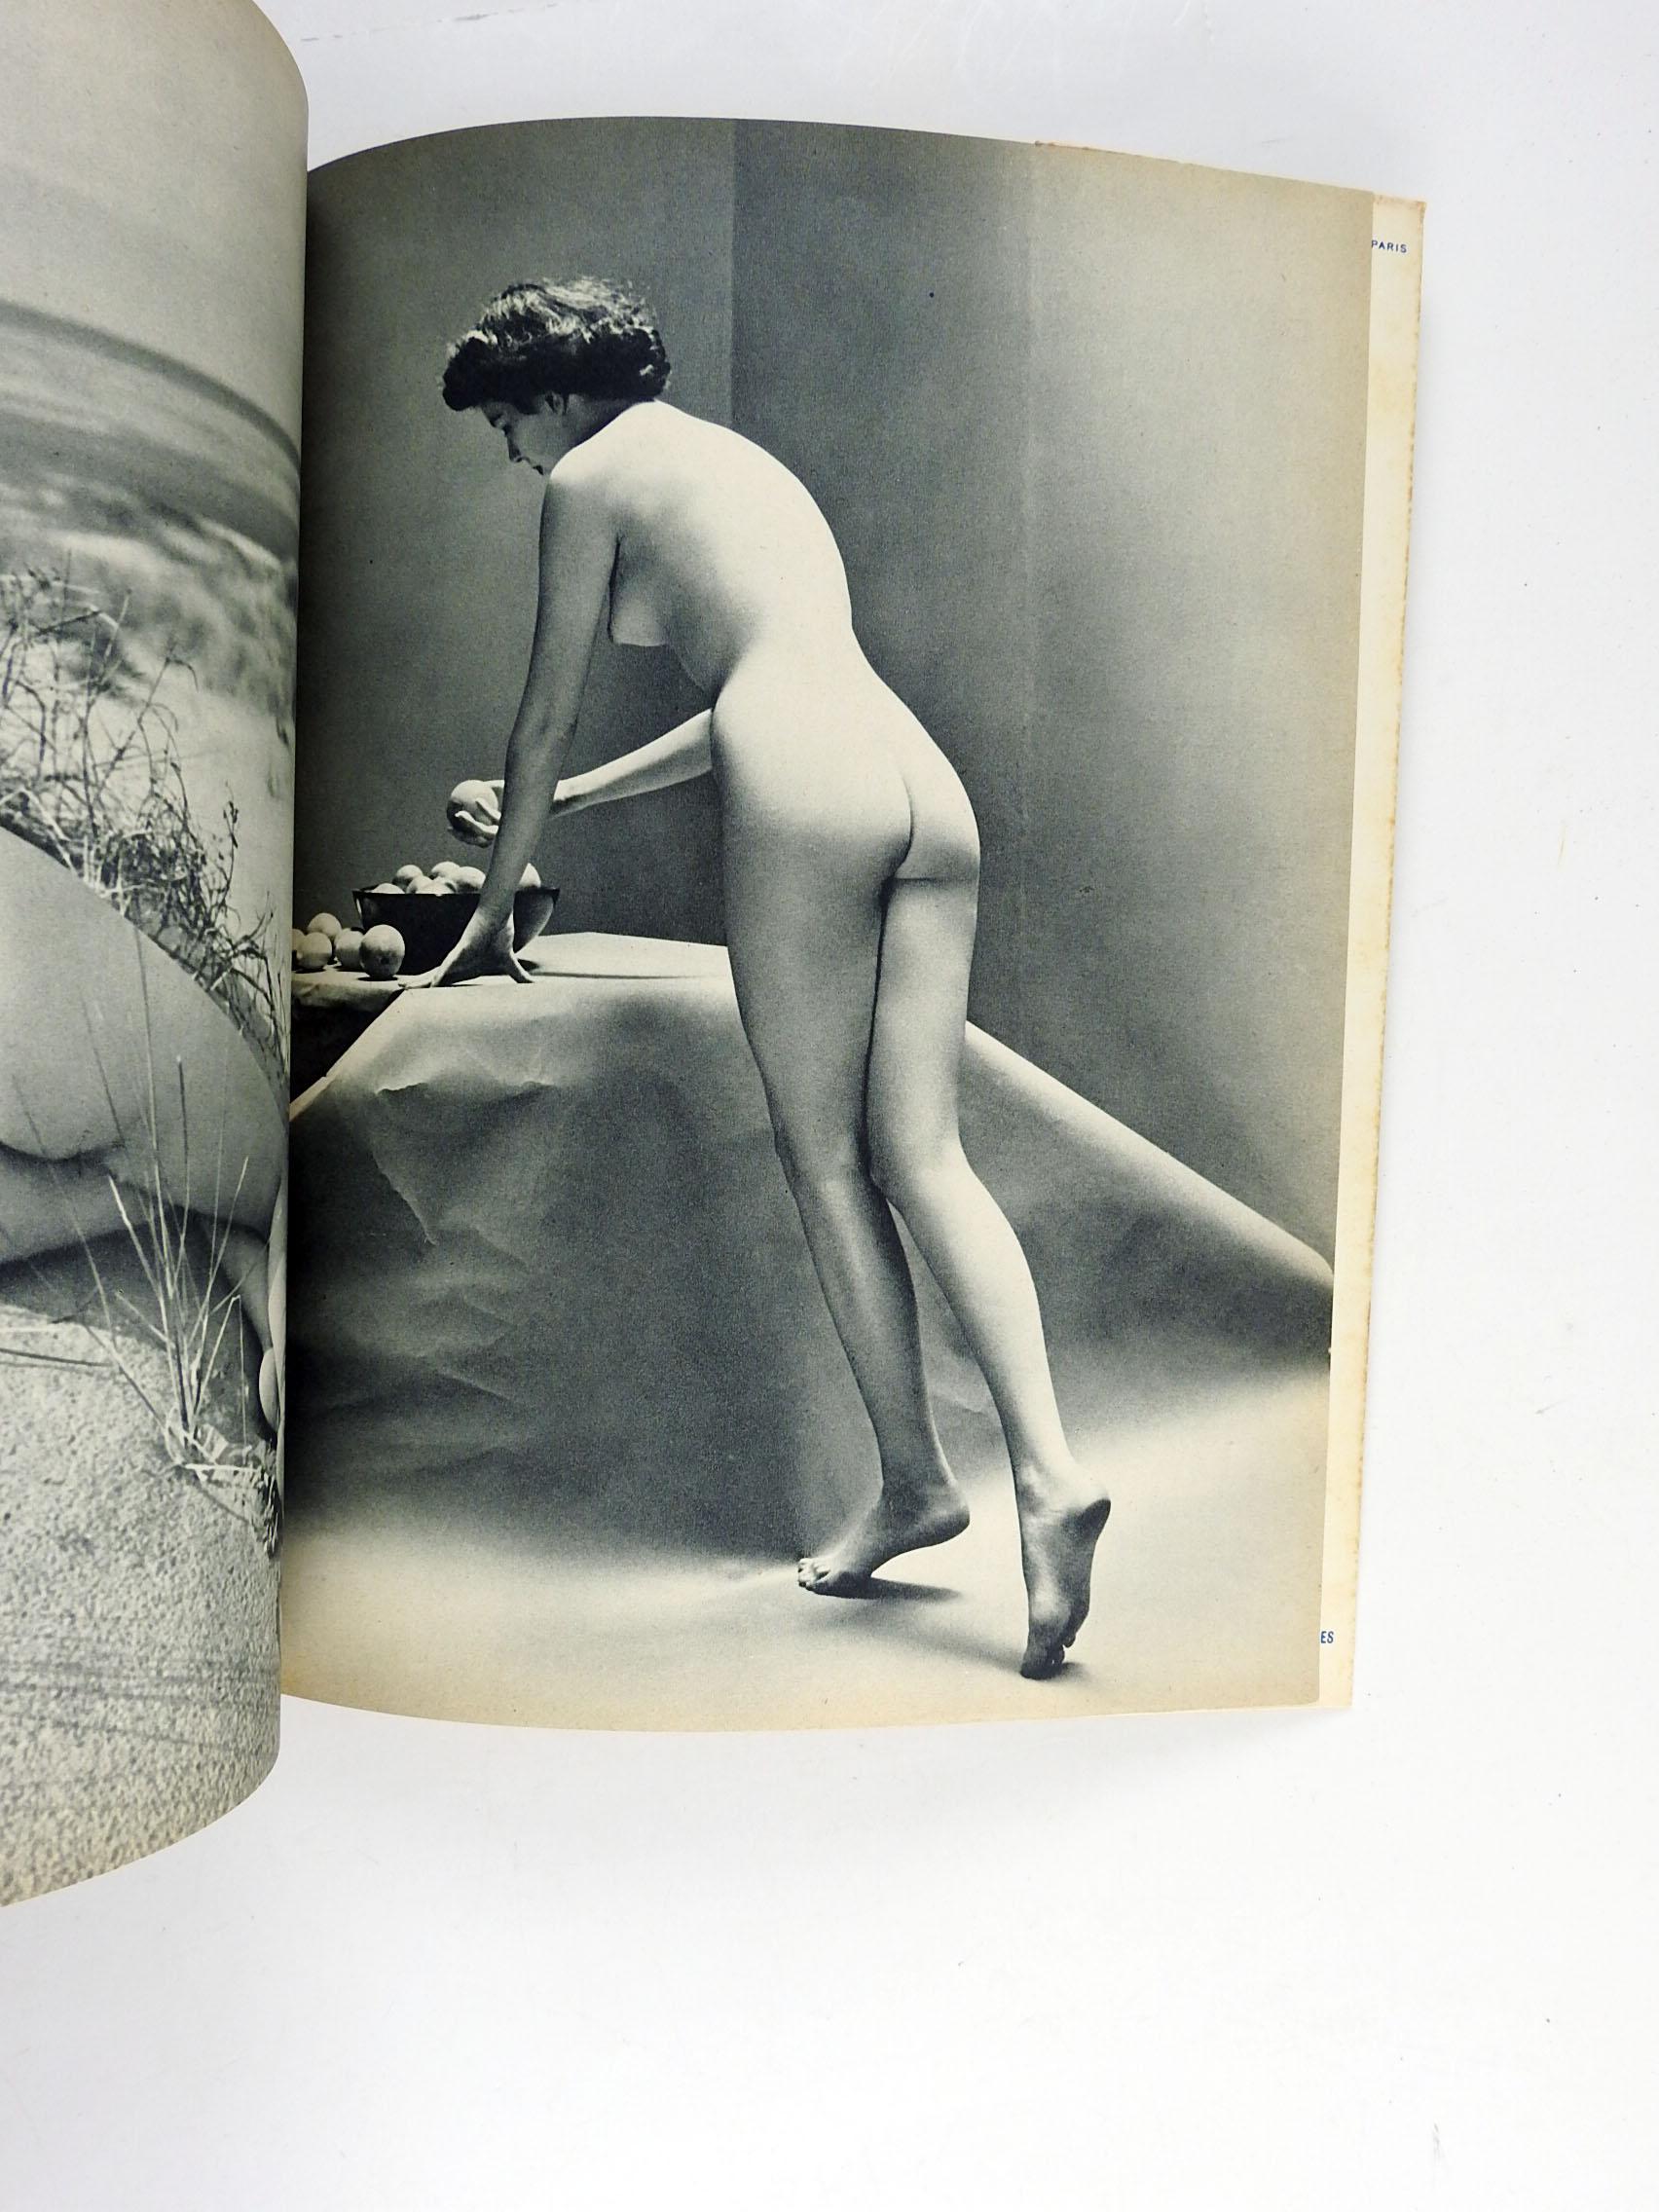 French book of artistic nude photographs NUS: Photos Originales De Andre De Dienes, Serge De Sazo Album No. 7. Softcover, 1950's, Paris, Société Parisienne d'Editions Artistiques. Paperback, age toning, edge wear.


 